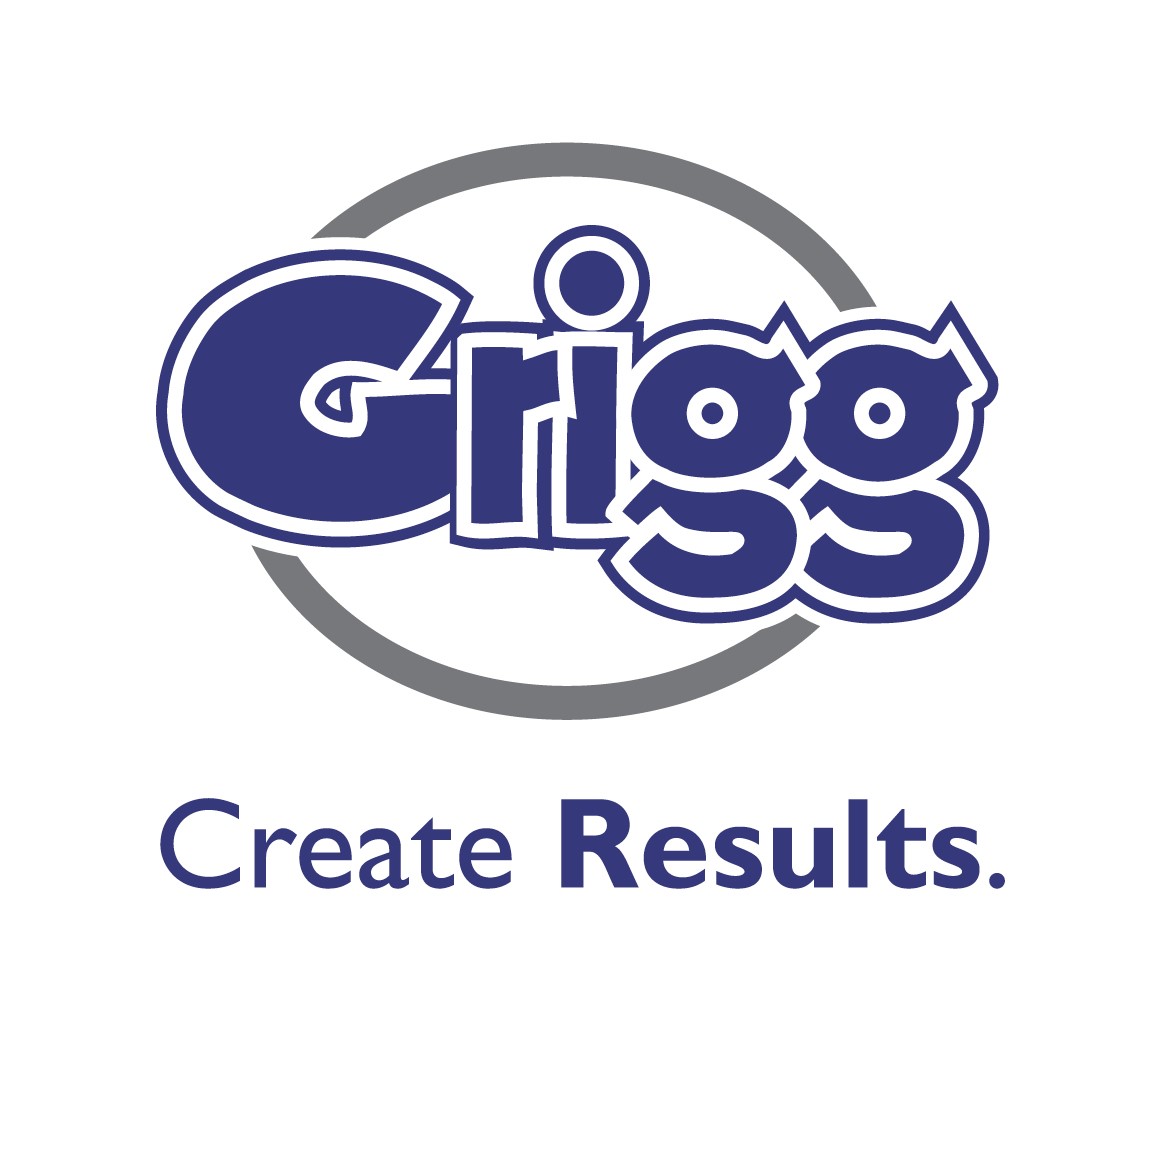 Grigg logo